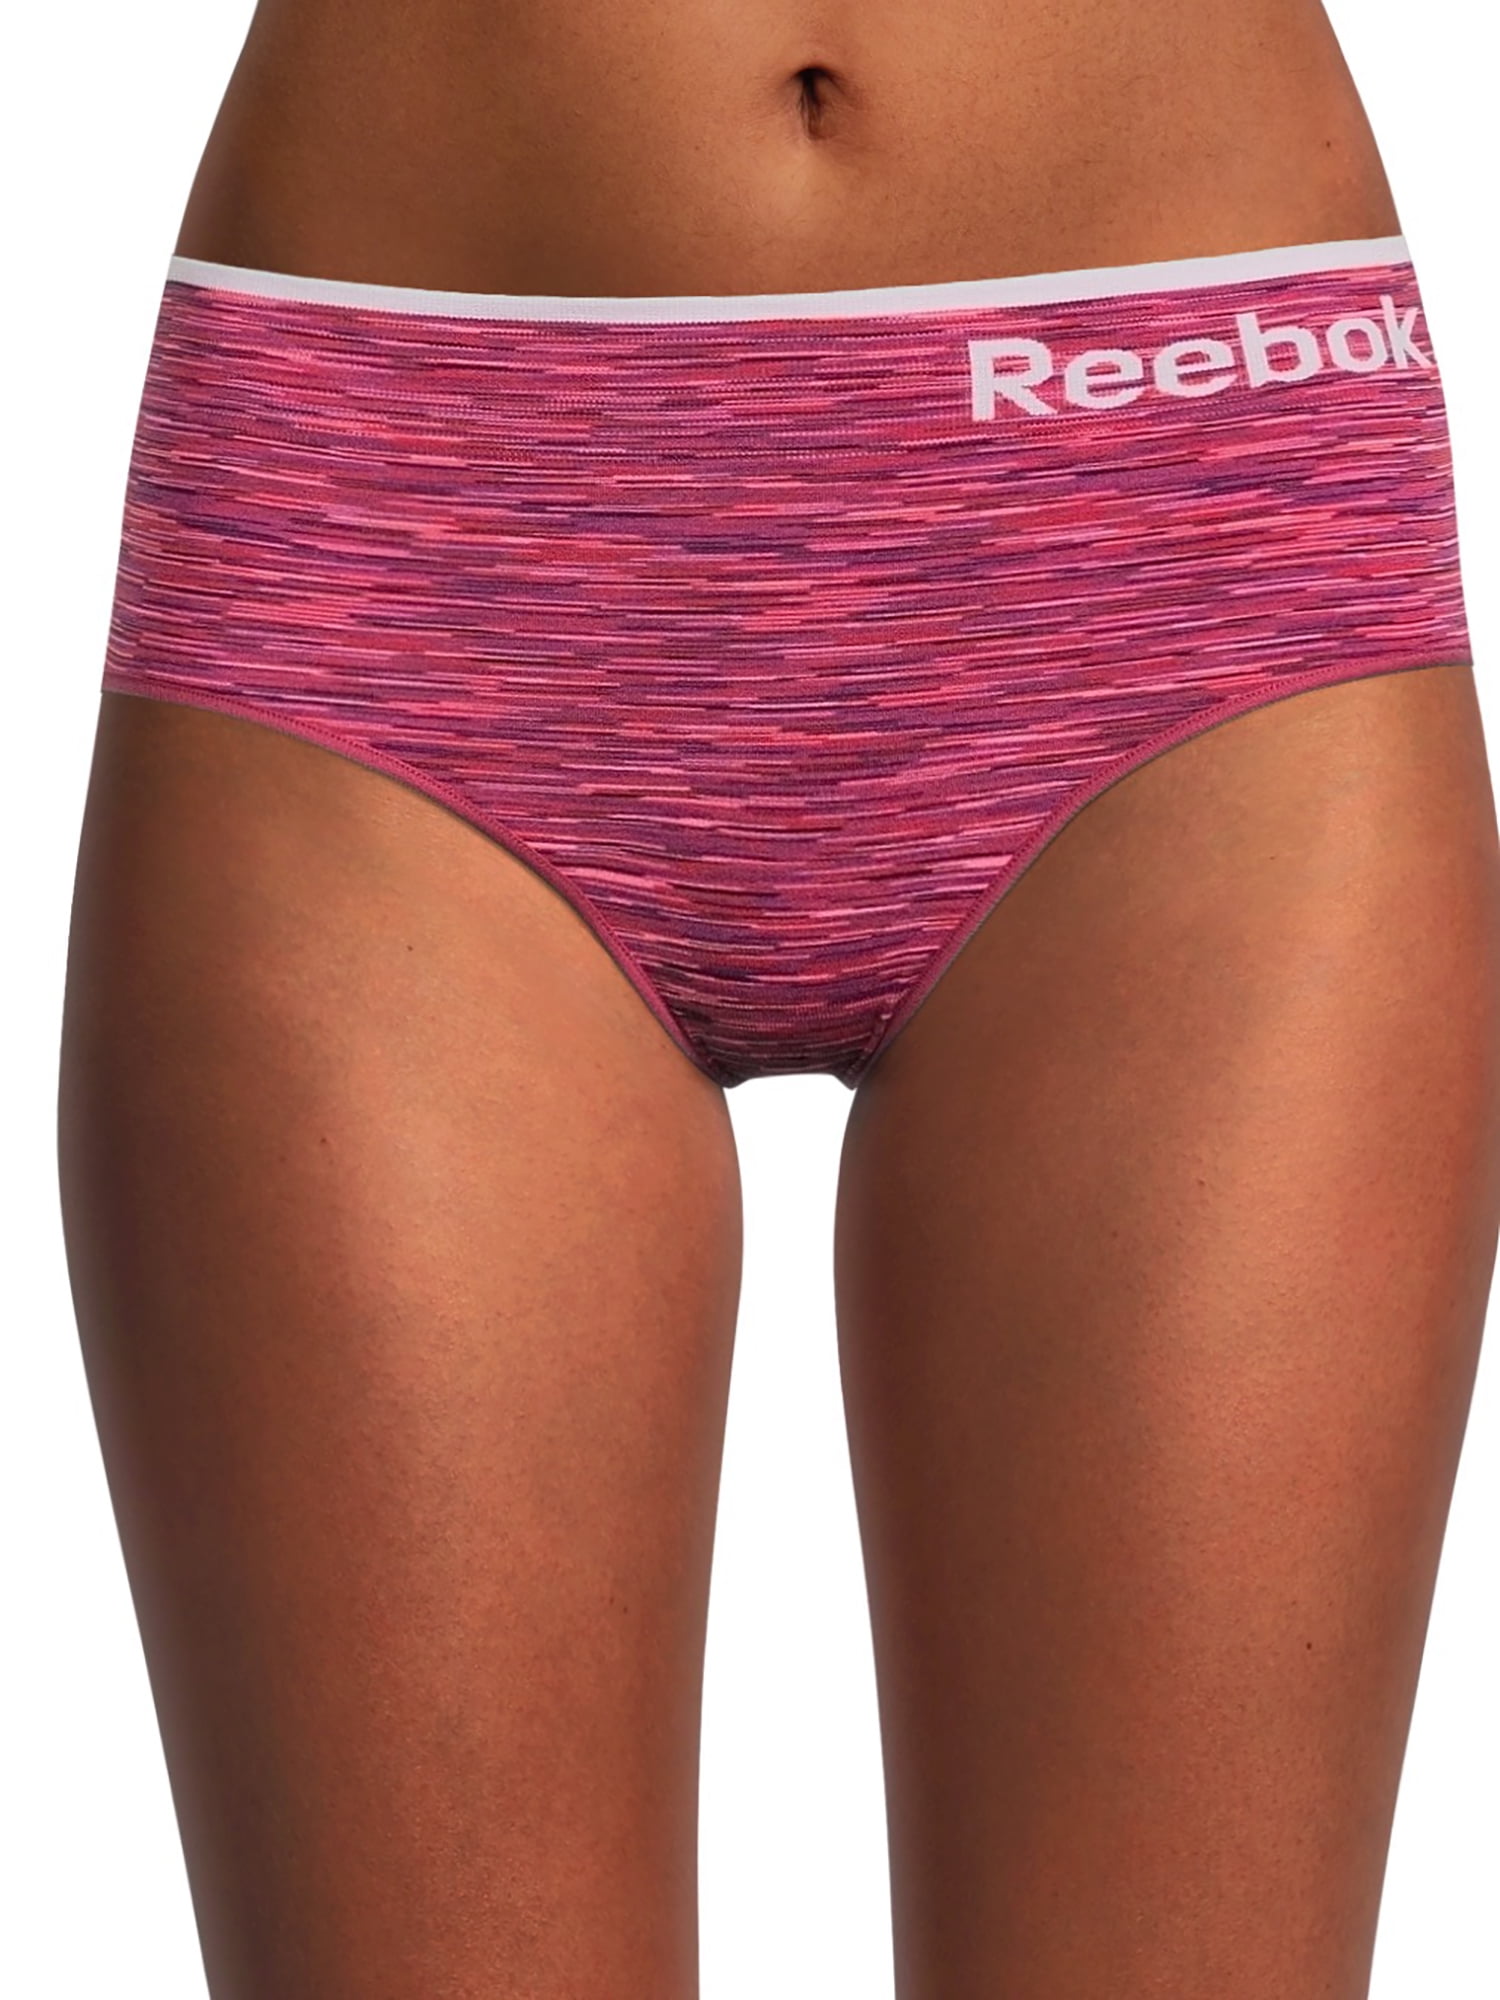 Reebok Women's Underwear – No Show Lightweight Hipster Briefs (6